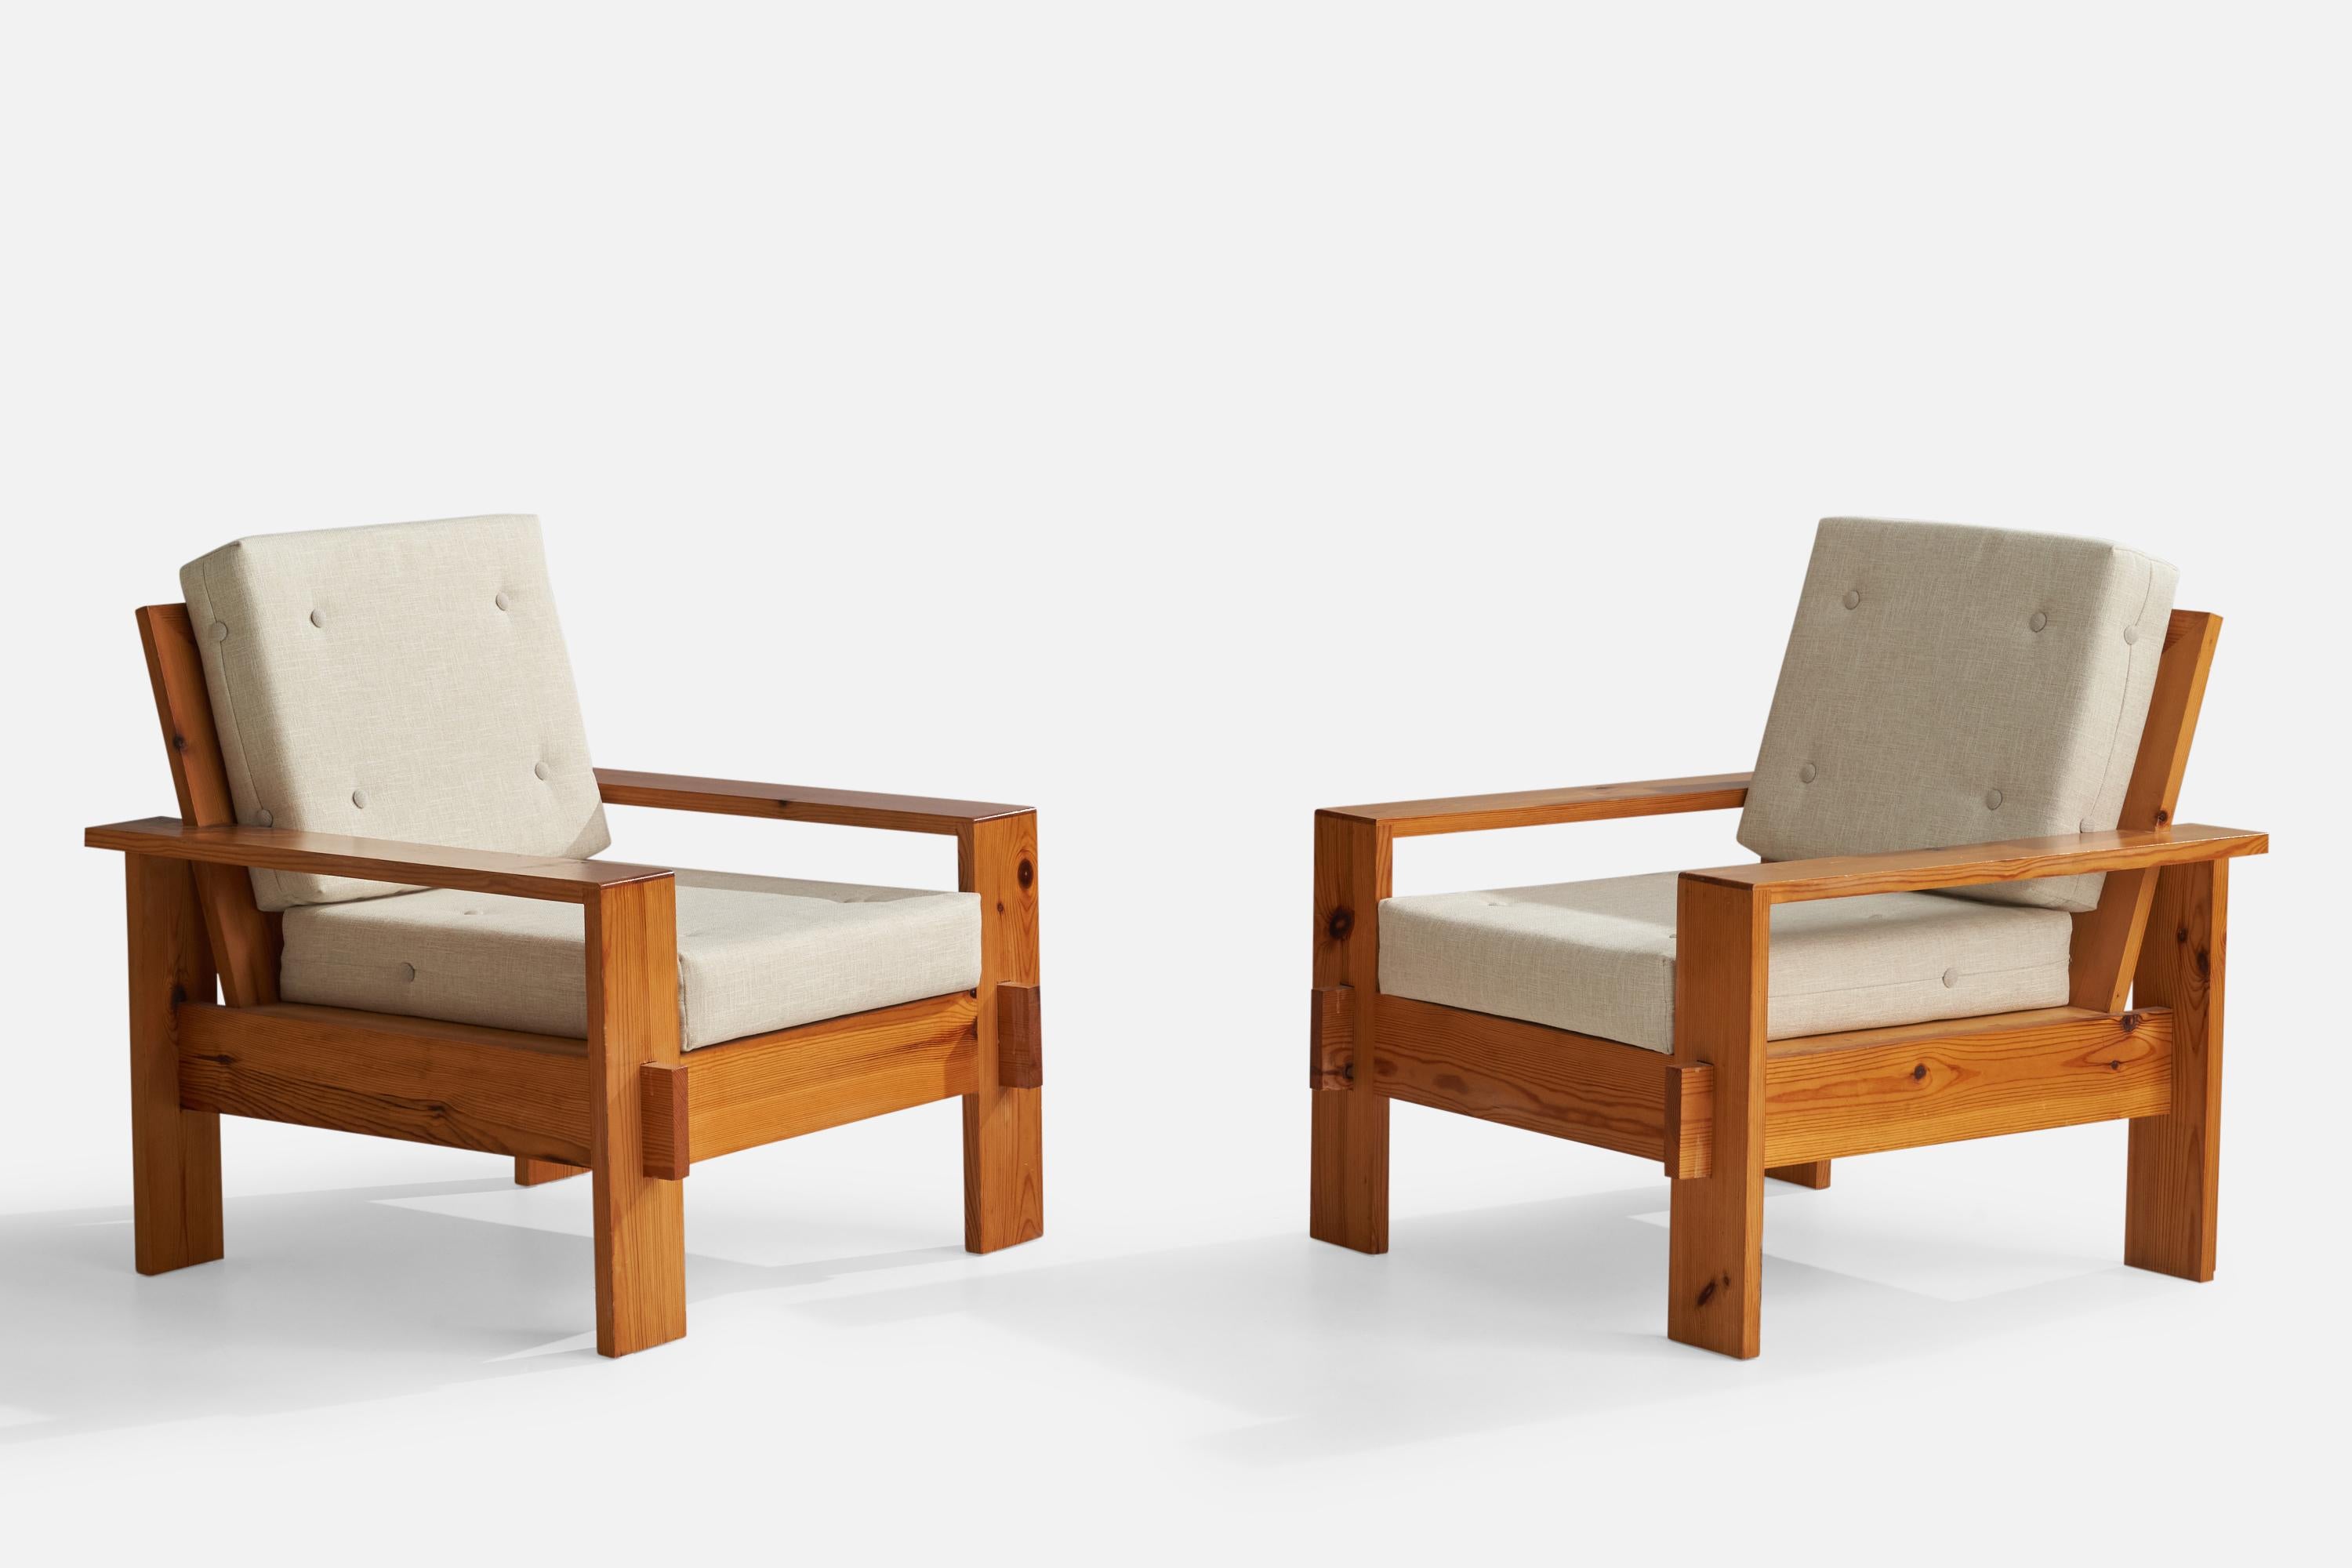 Paire de chaises de salon en pin et tissu blanc cassé, conçues et produites en Finlande, années 1970.

Hauteur de l'assise 16